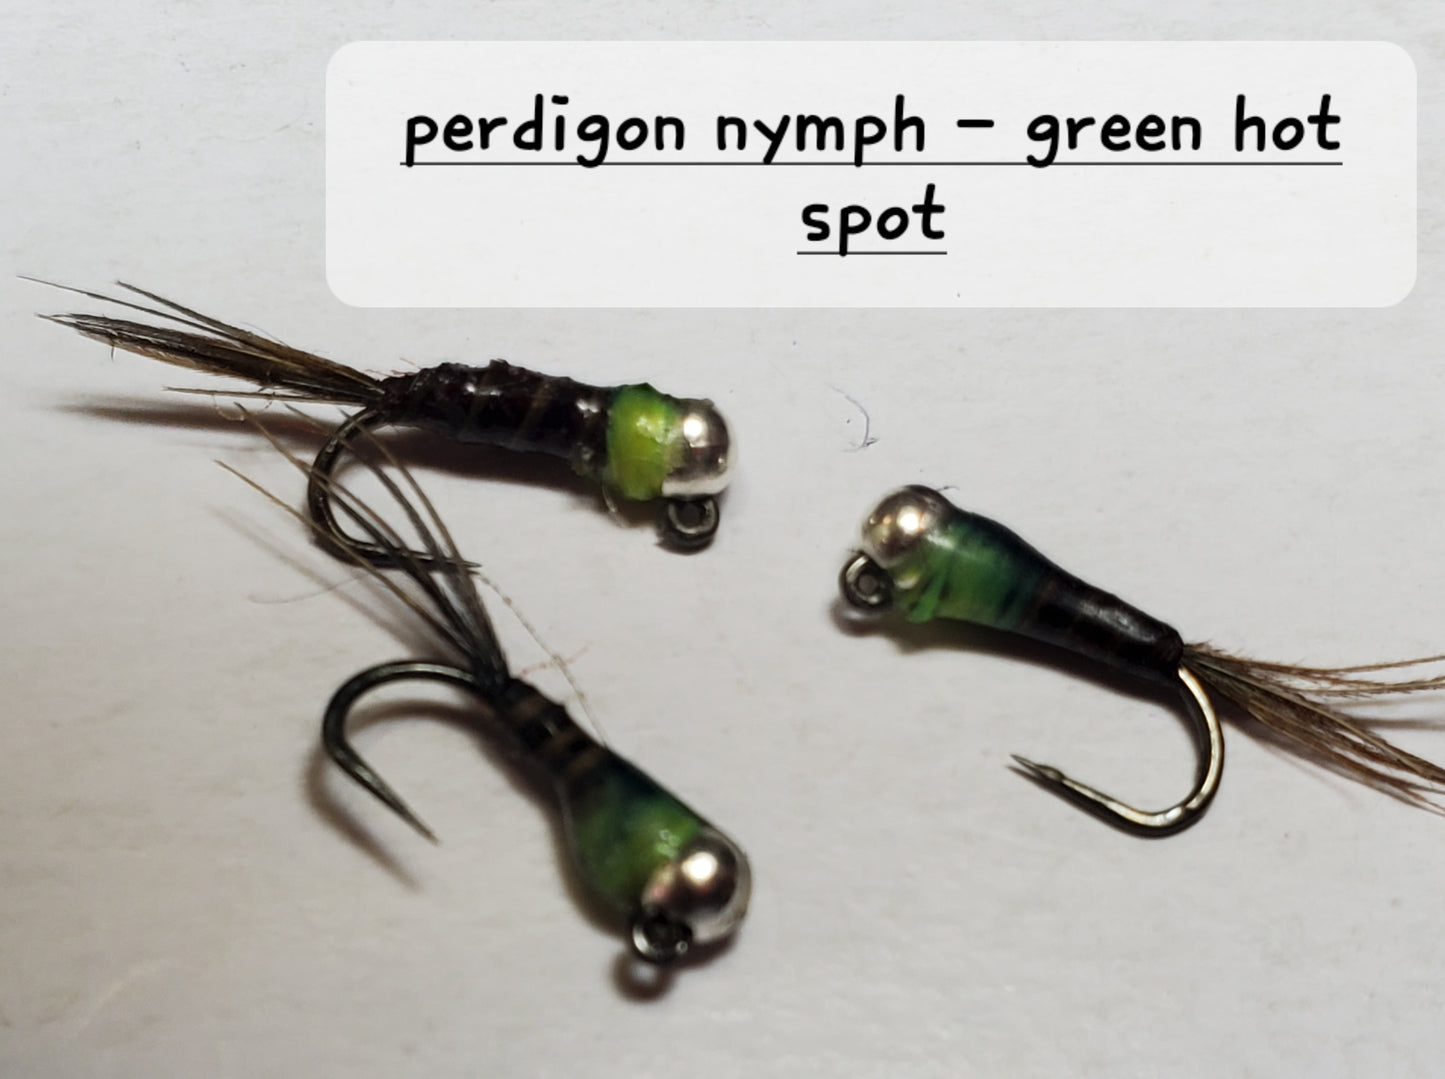 Perdigon Nymph, Tungsten Perdigon Nymph, Perdigon Nymph Green Hot Spot